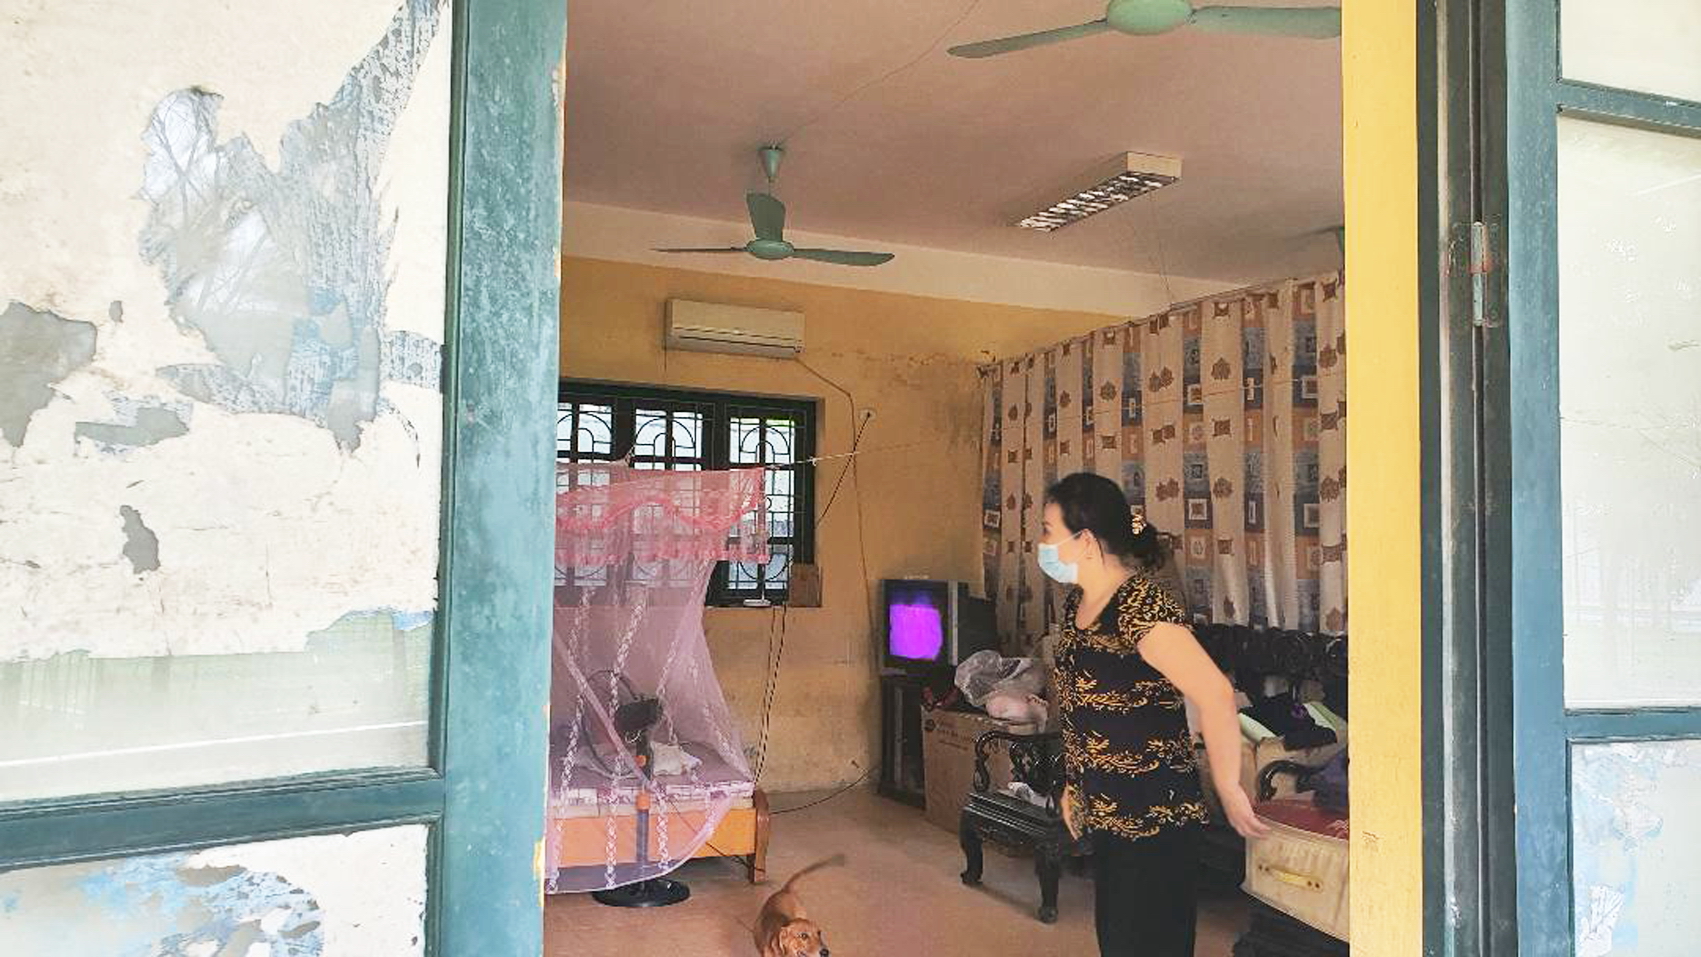 Từ năm 2013, gia đình bà Ngô Thị Anh Thư buộc lòng phải “chiếm dụng” ba phòng học trong Trường THPT dân lập Phương Nam để làm nơi ăn ở, sinh hoạt nhằm gây áp lực để đòi lại tiền